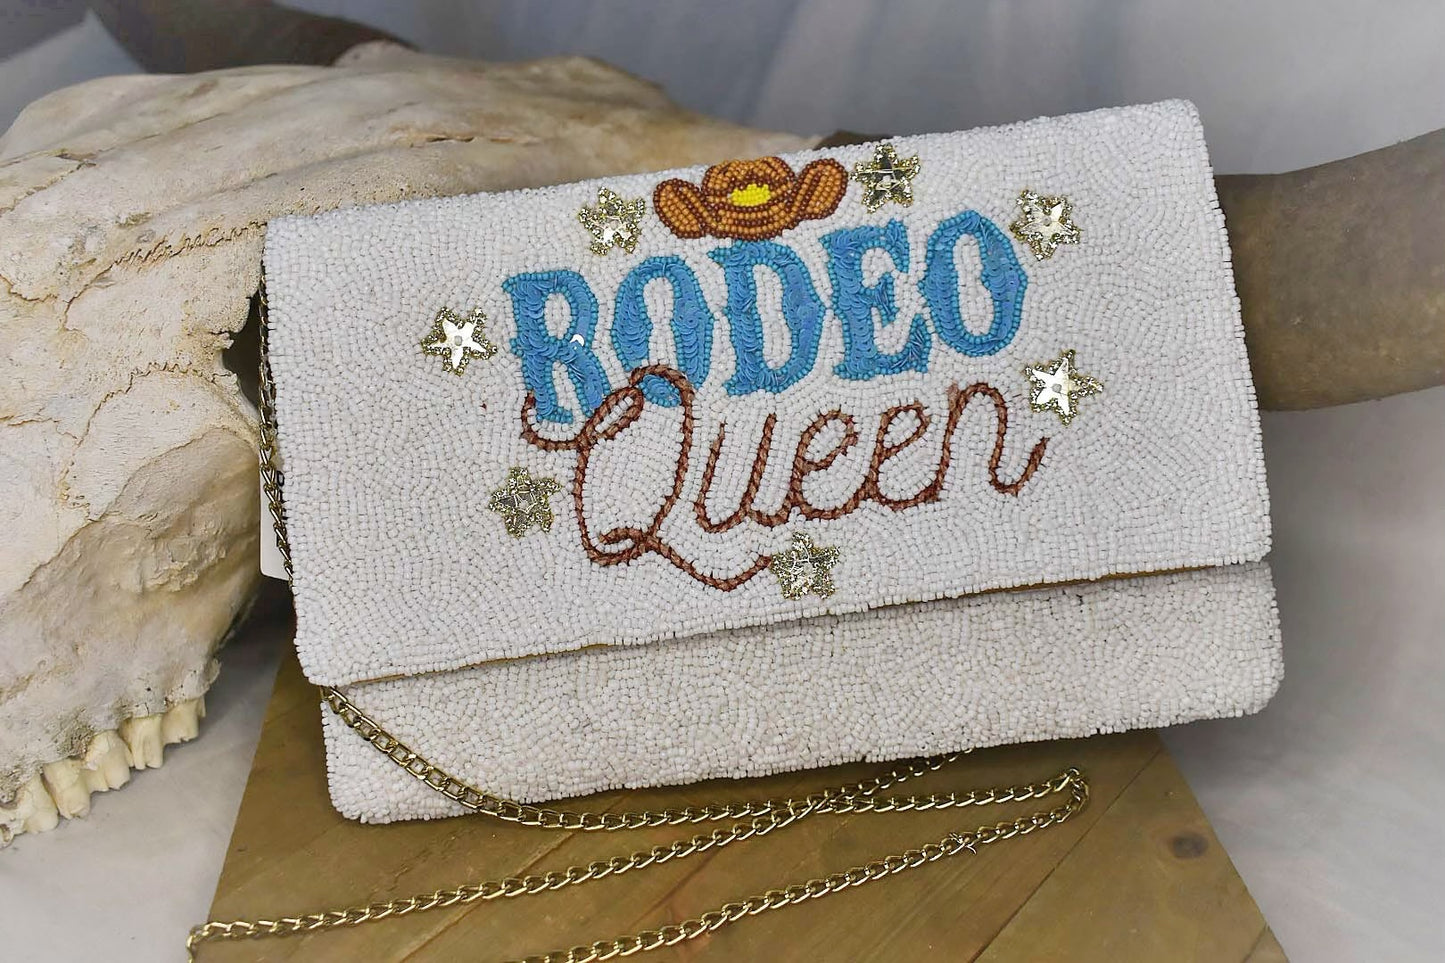 Beaded Rodeo Queen Bag